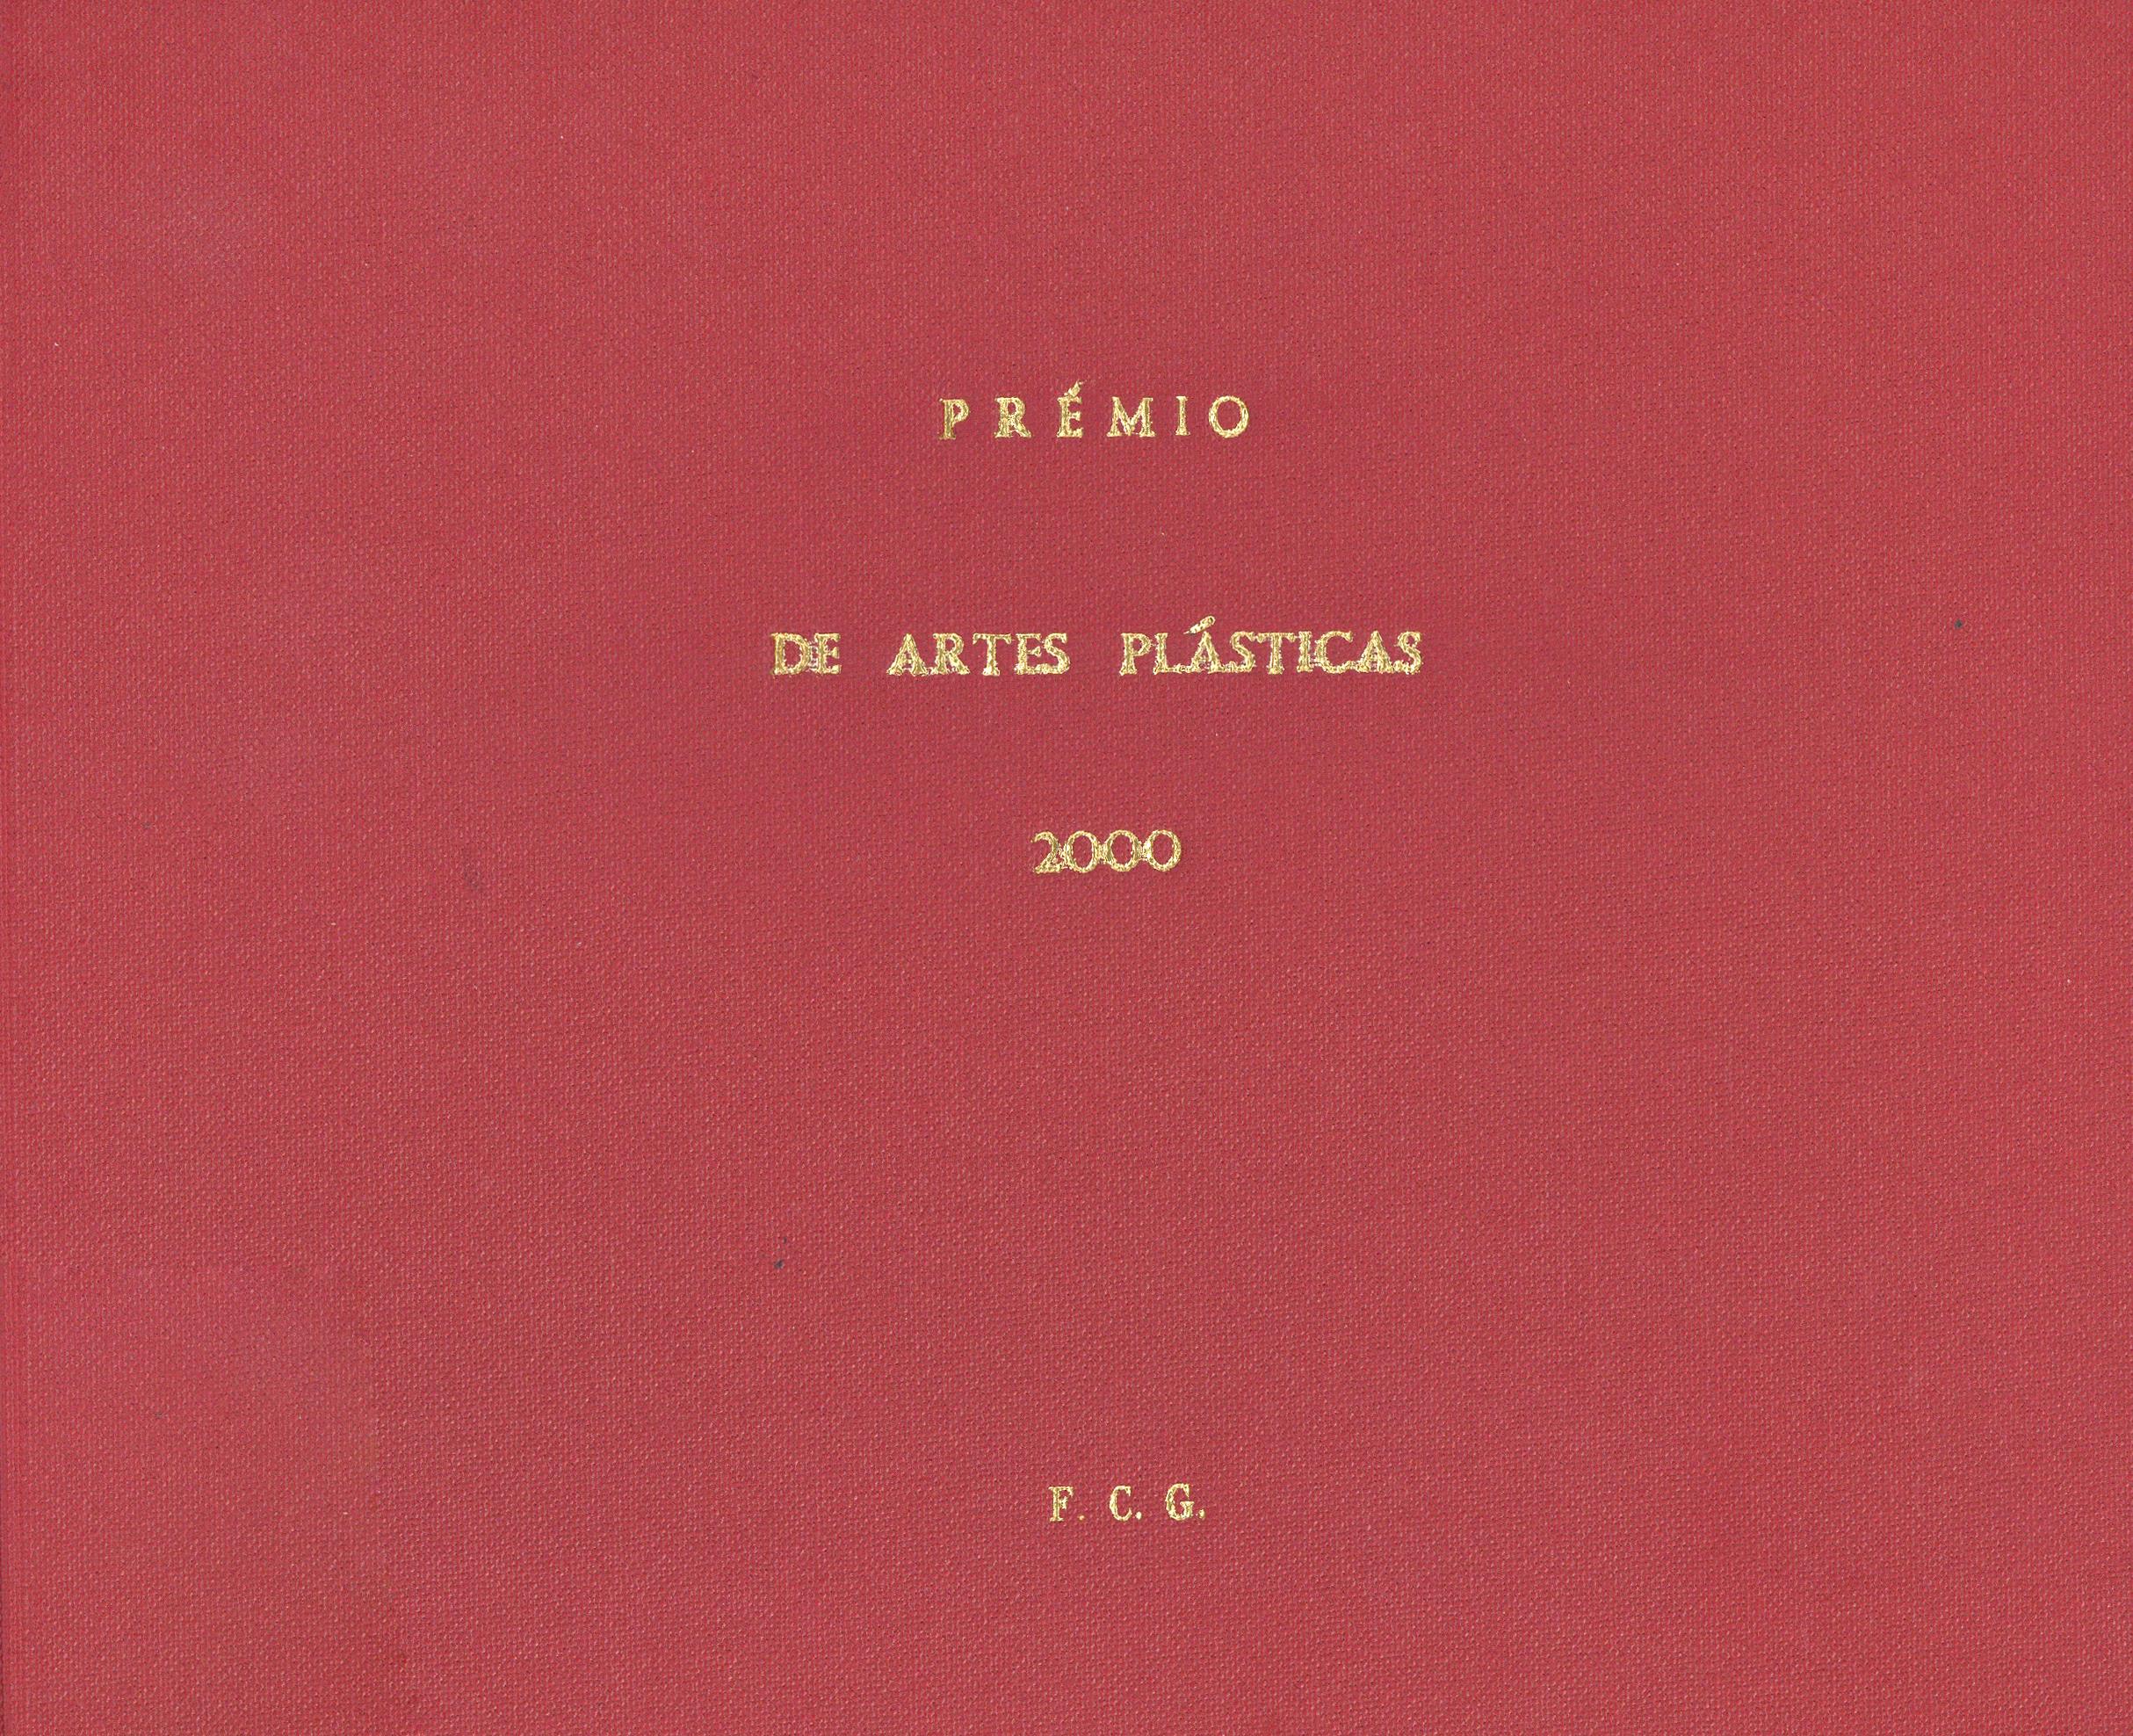 Prémio de Artes Plásticas União Latina 2000